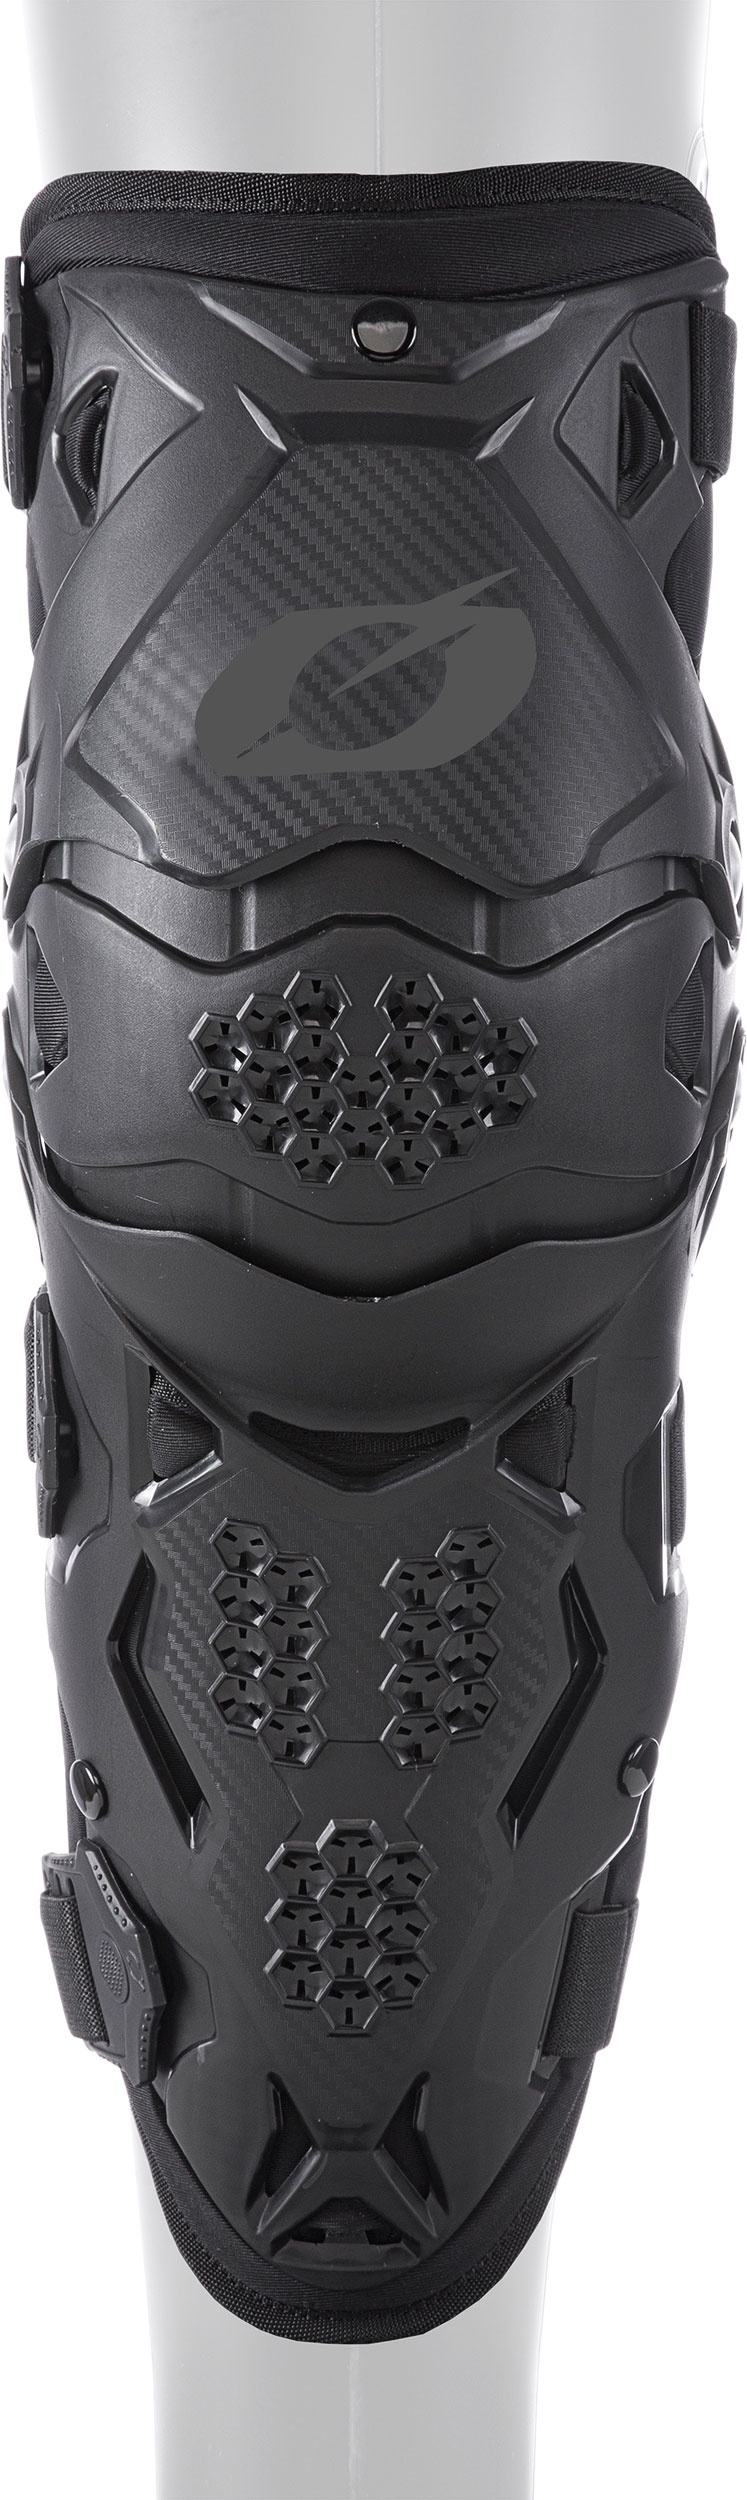 ONeal Pro IV S23, protections de genoux Niveau-1 jeunes - Noir - Taille unique